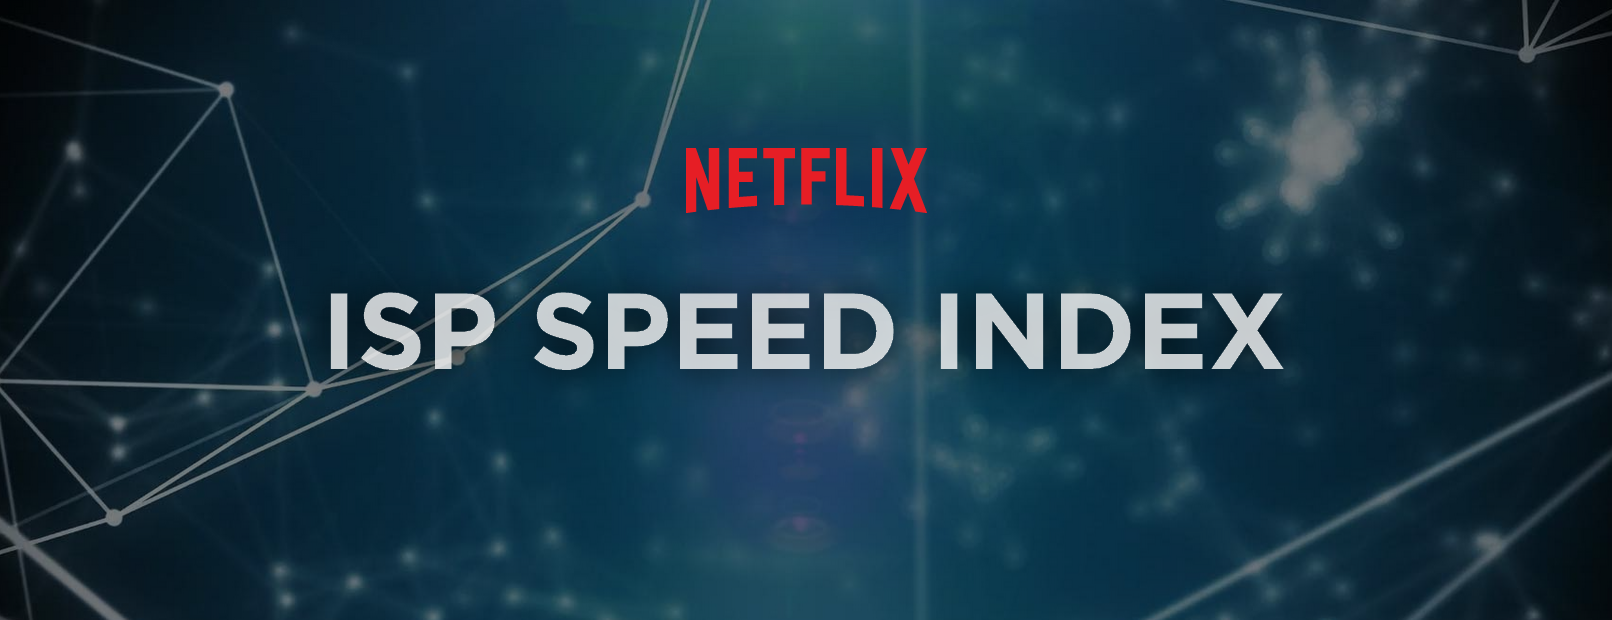 Bouygues est à nouveau premier du classement ISP Speed Index en septembre